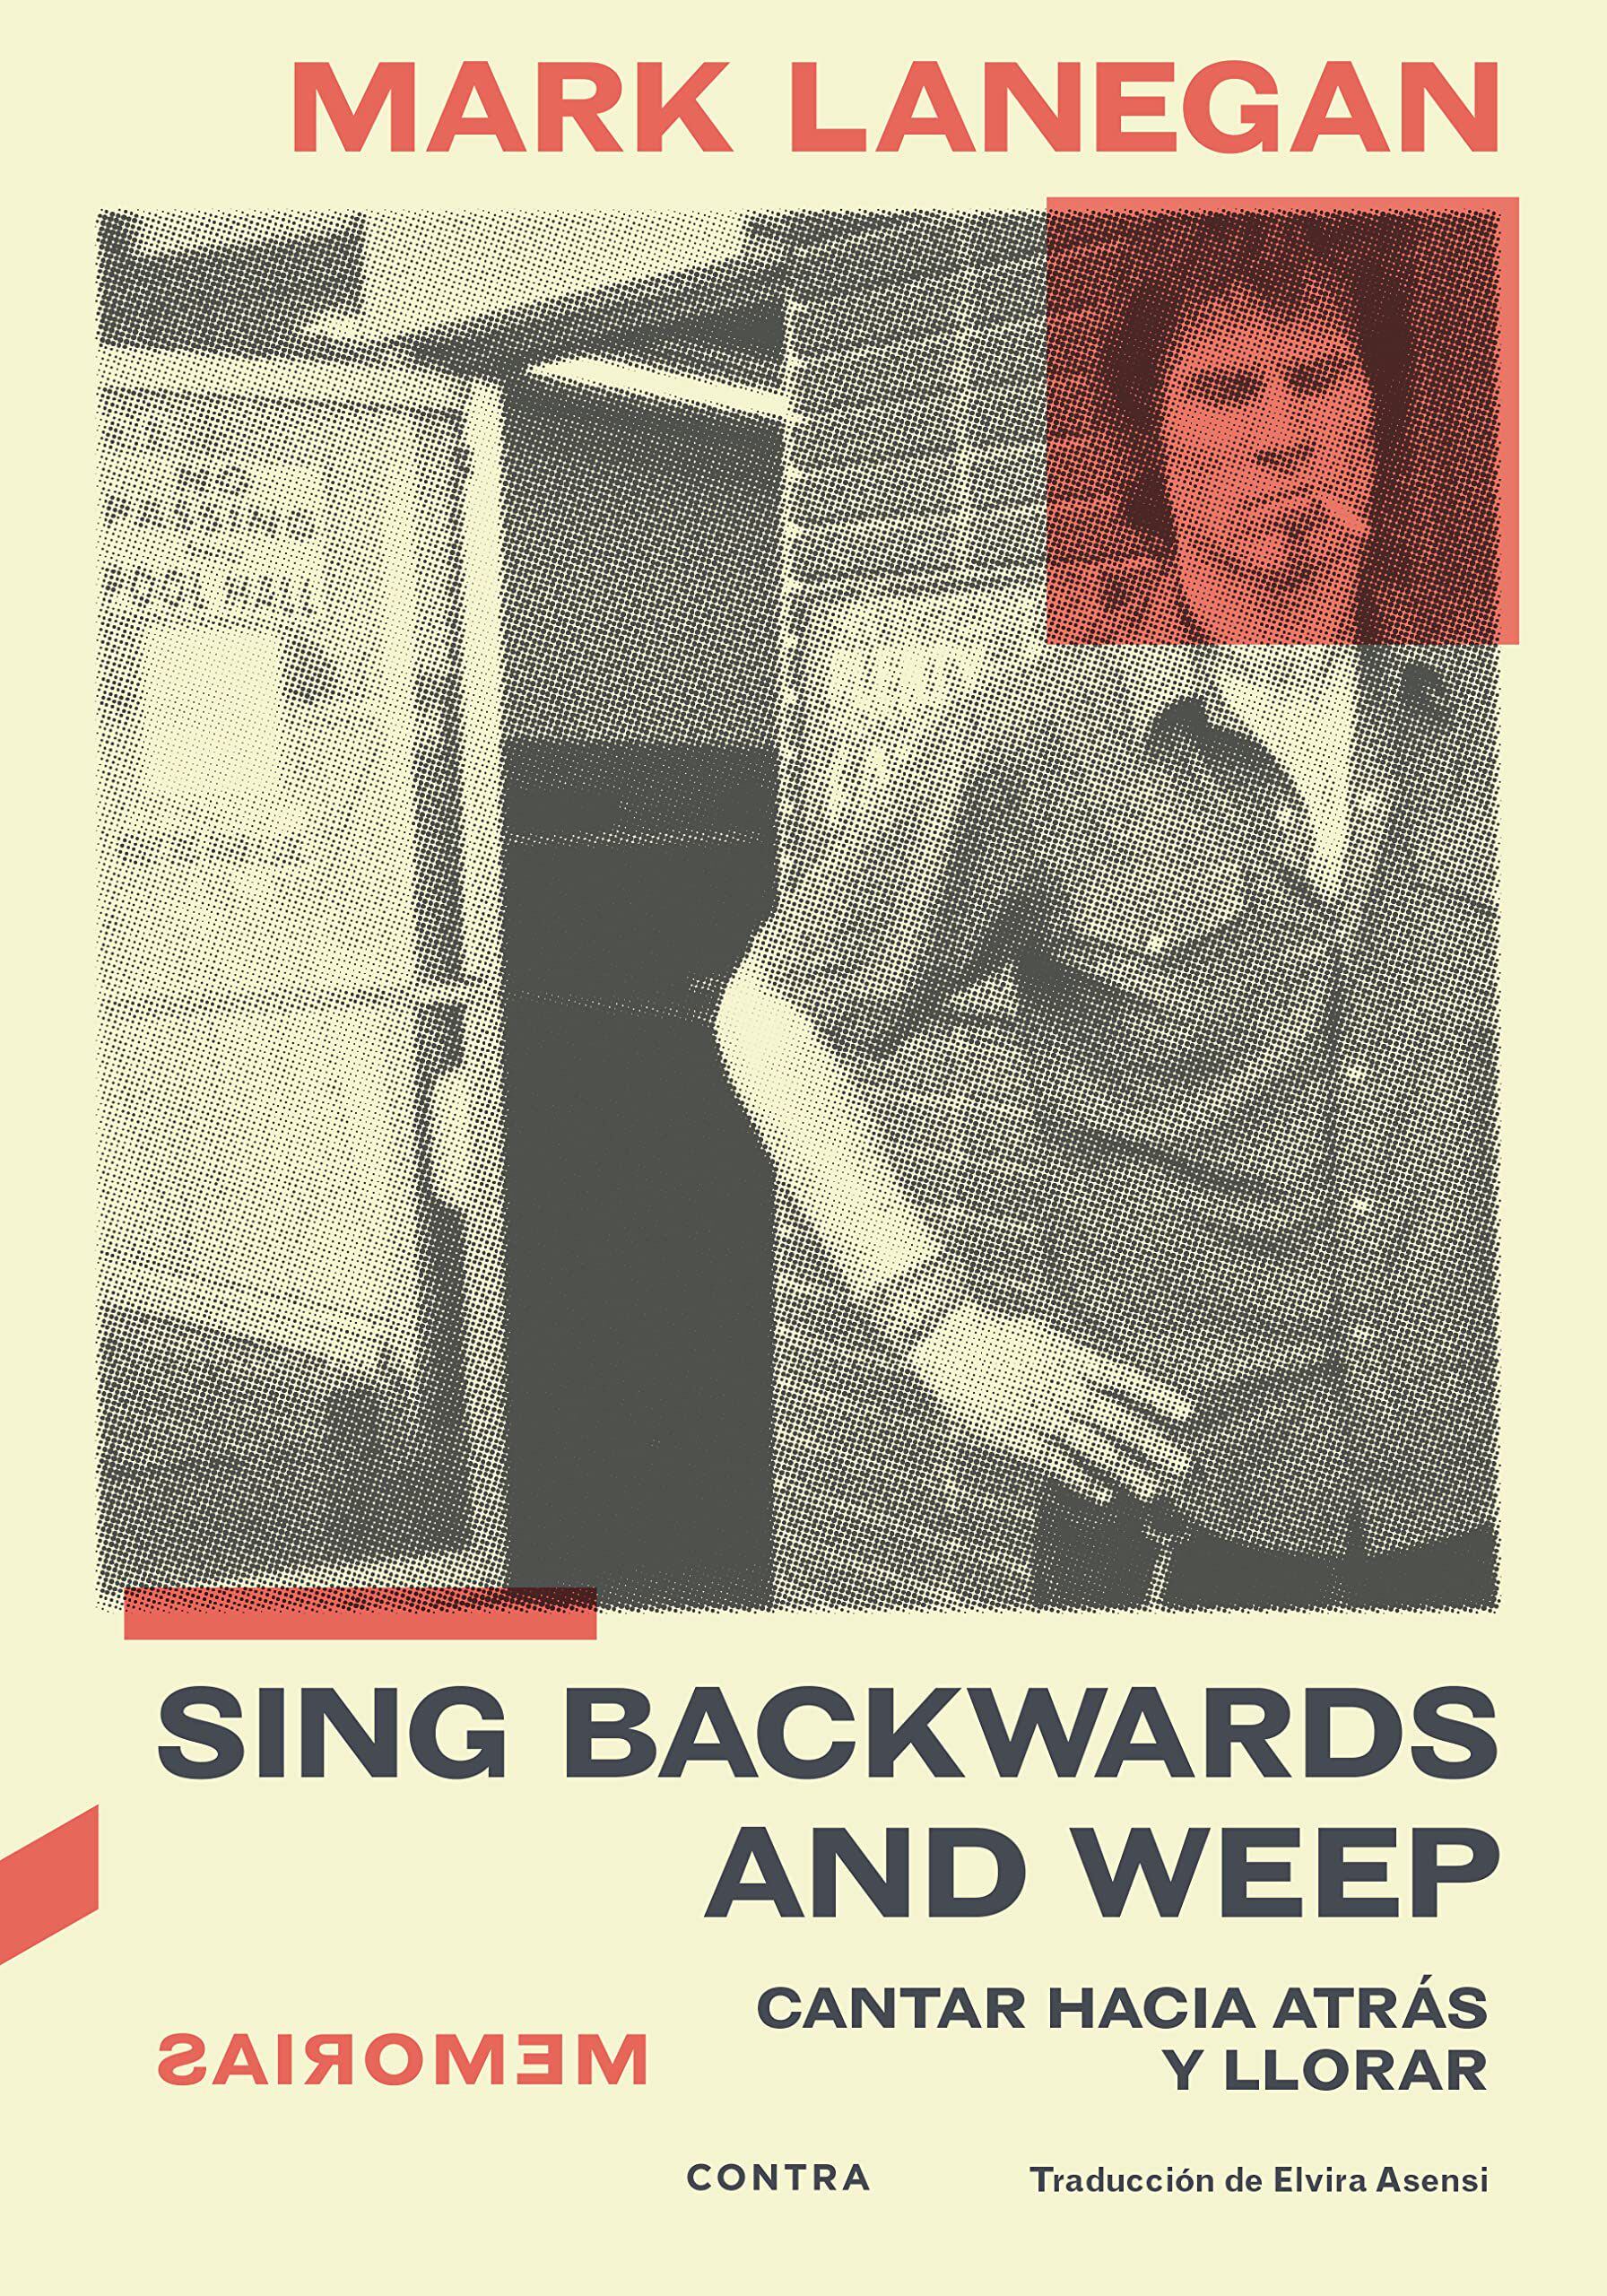 Portada del libro 'Sing Backwards and Weep', las memorias de Mark Lanegan, publicado por Contraediciones.